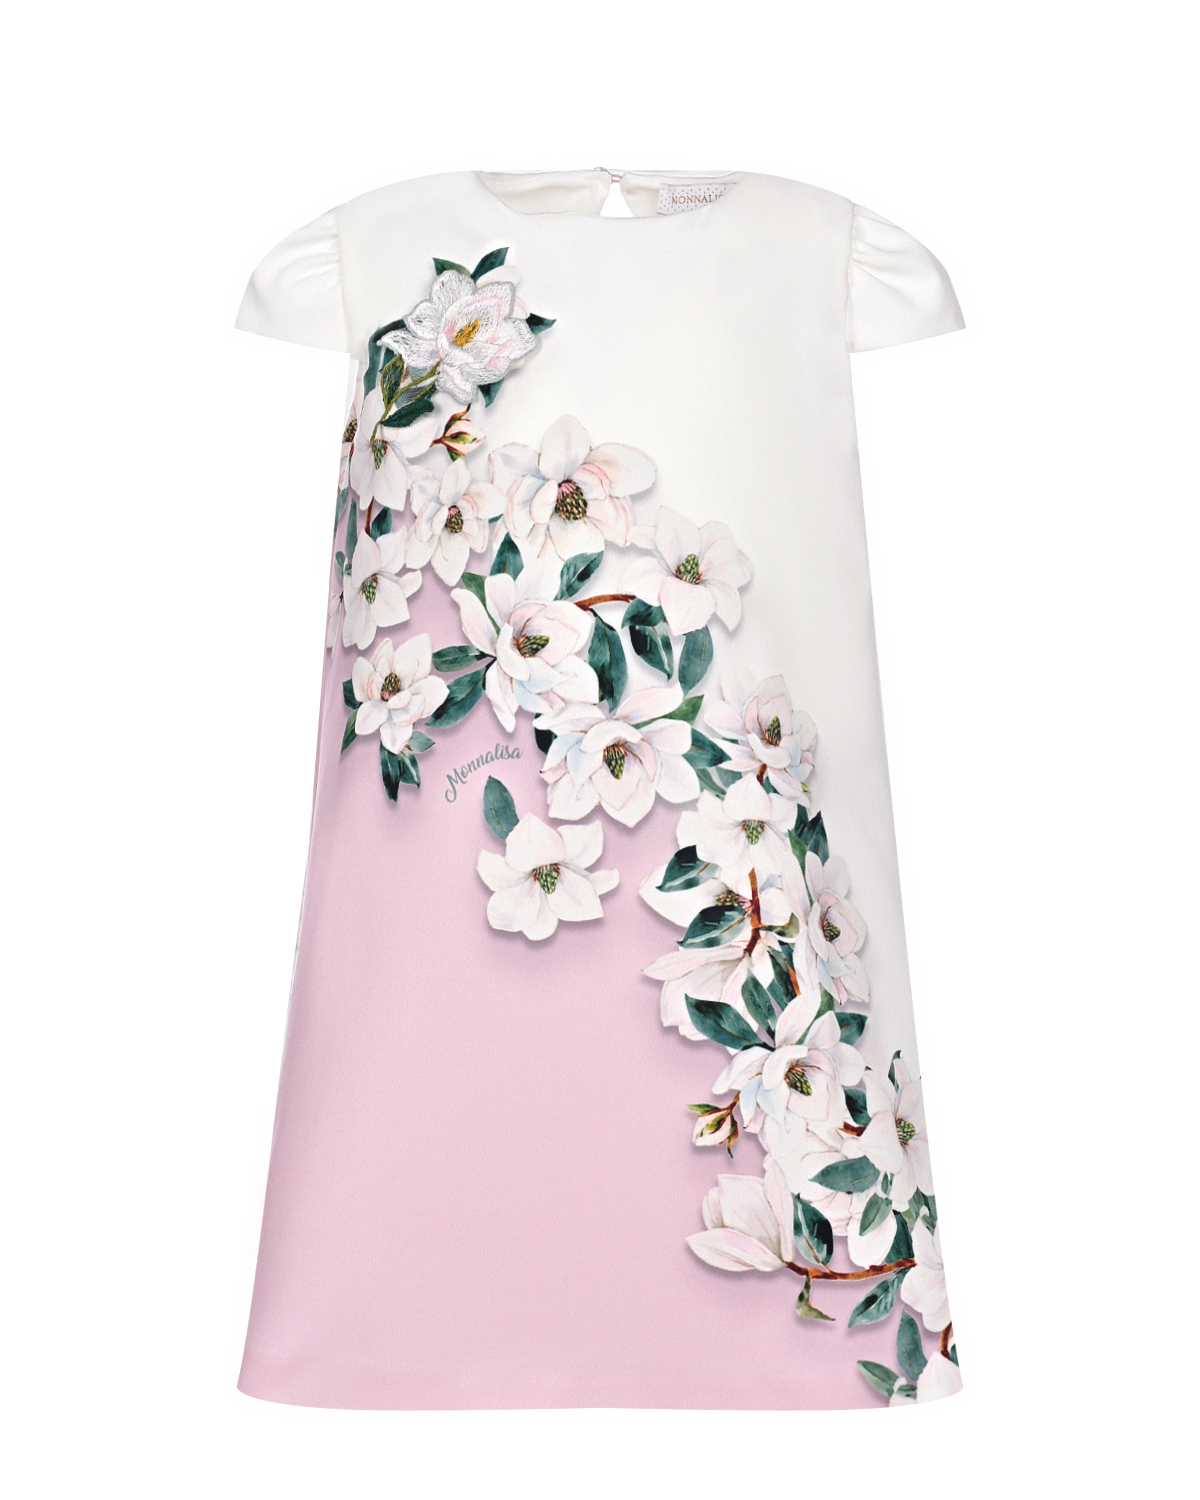 Бело-розовое платье с цветочным принтом Monnalisa розовое многослойное платье gulliver 152